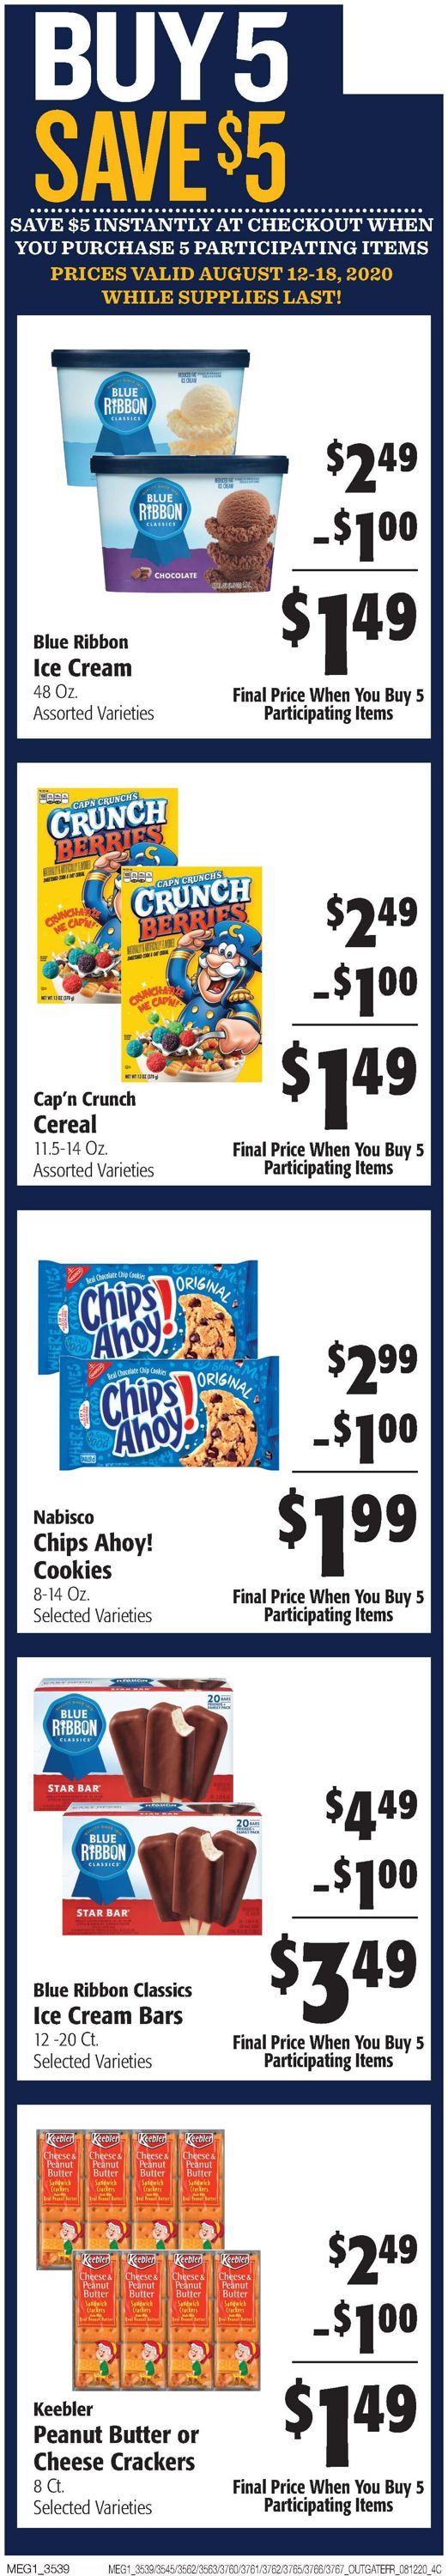 Hays Supermarket Weekly Ad Circular - valid 08/12-08/18/2020